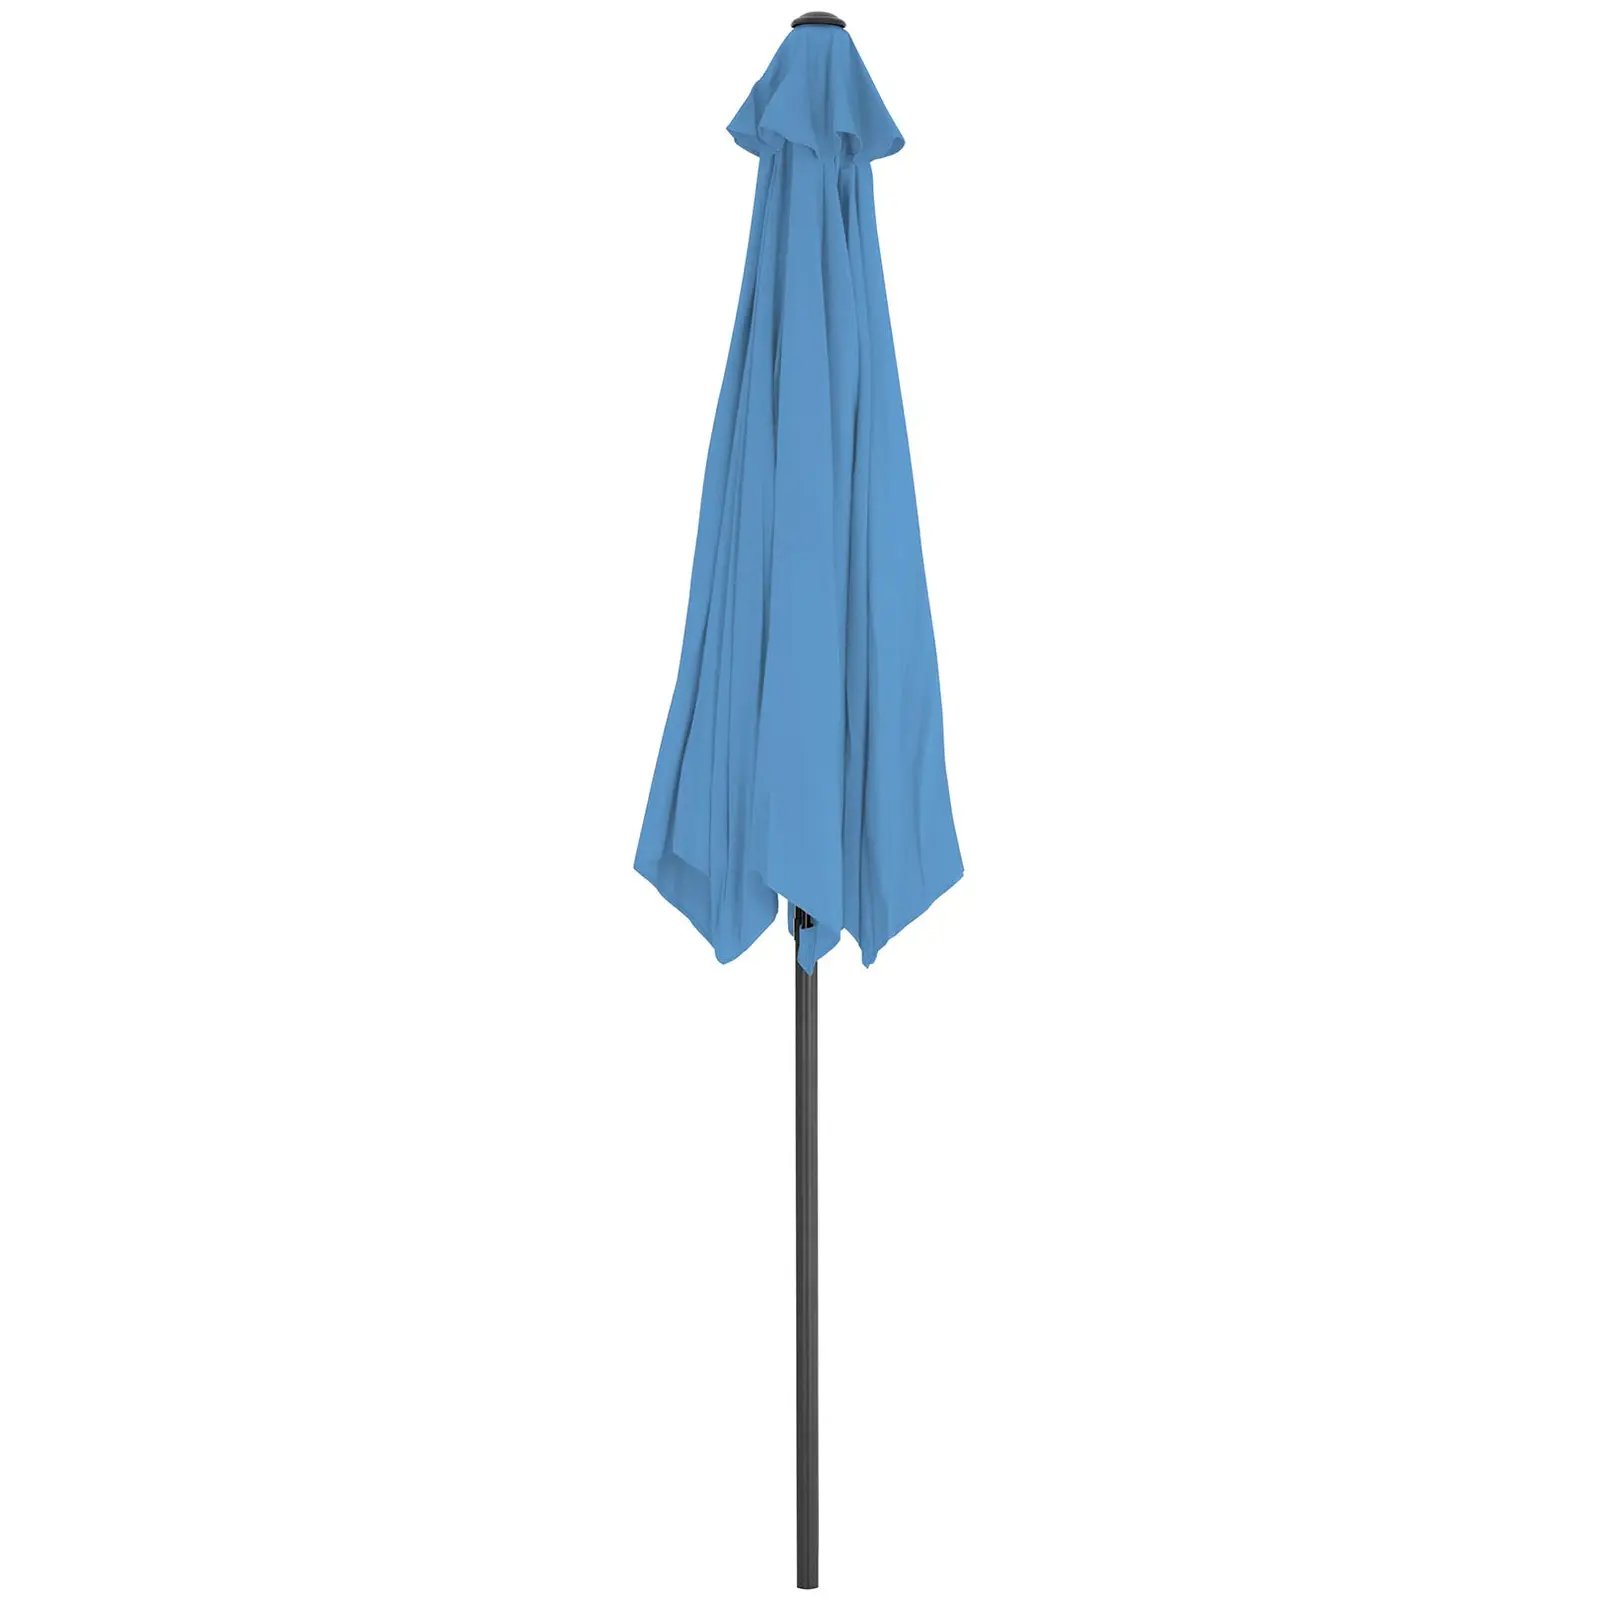 Parasoll - Blå - sekskantet - Ø 300 cm - vippbar